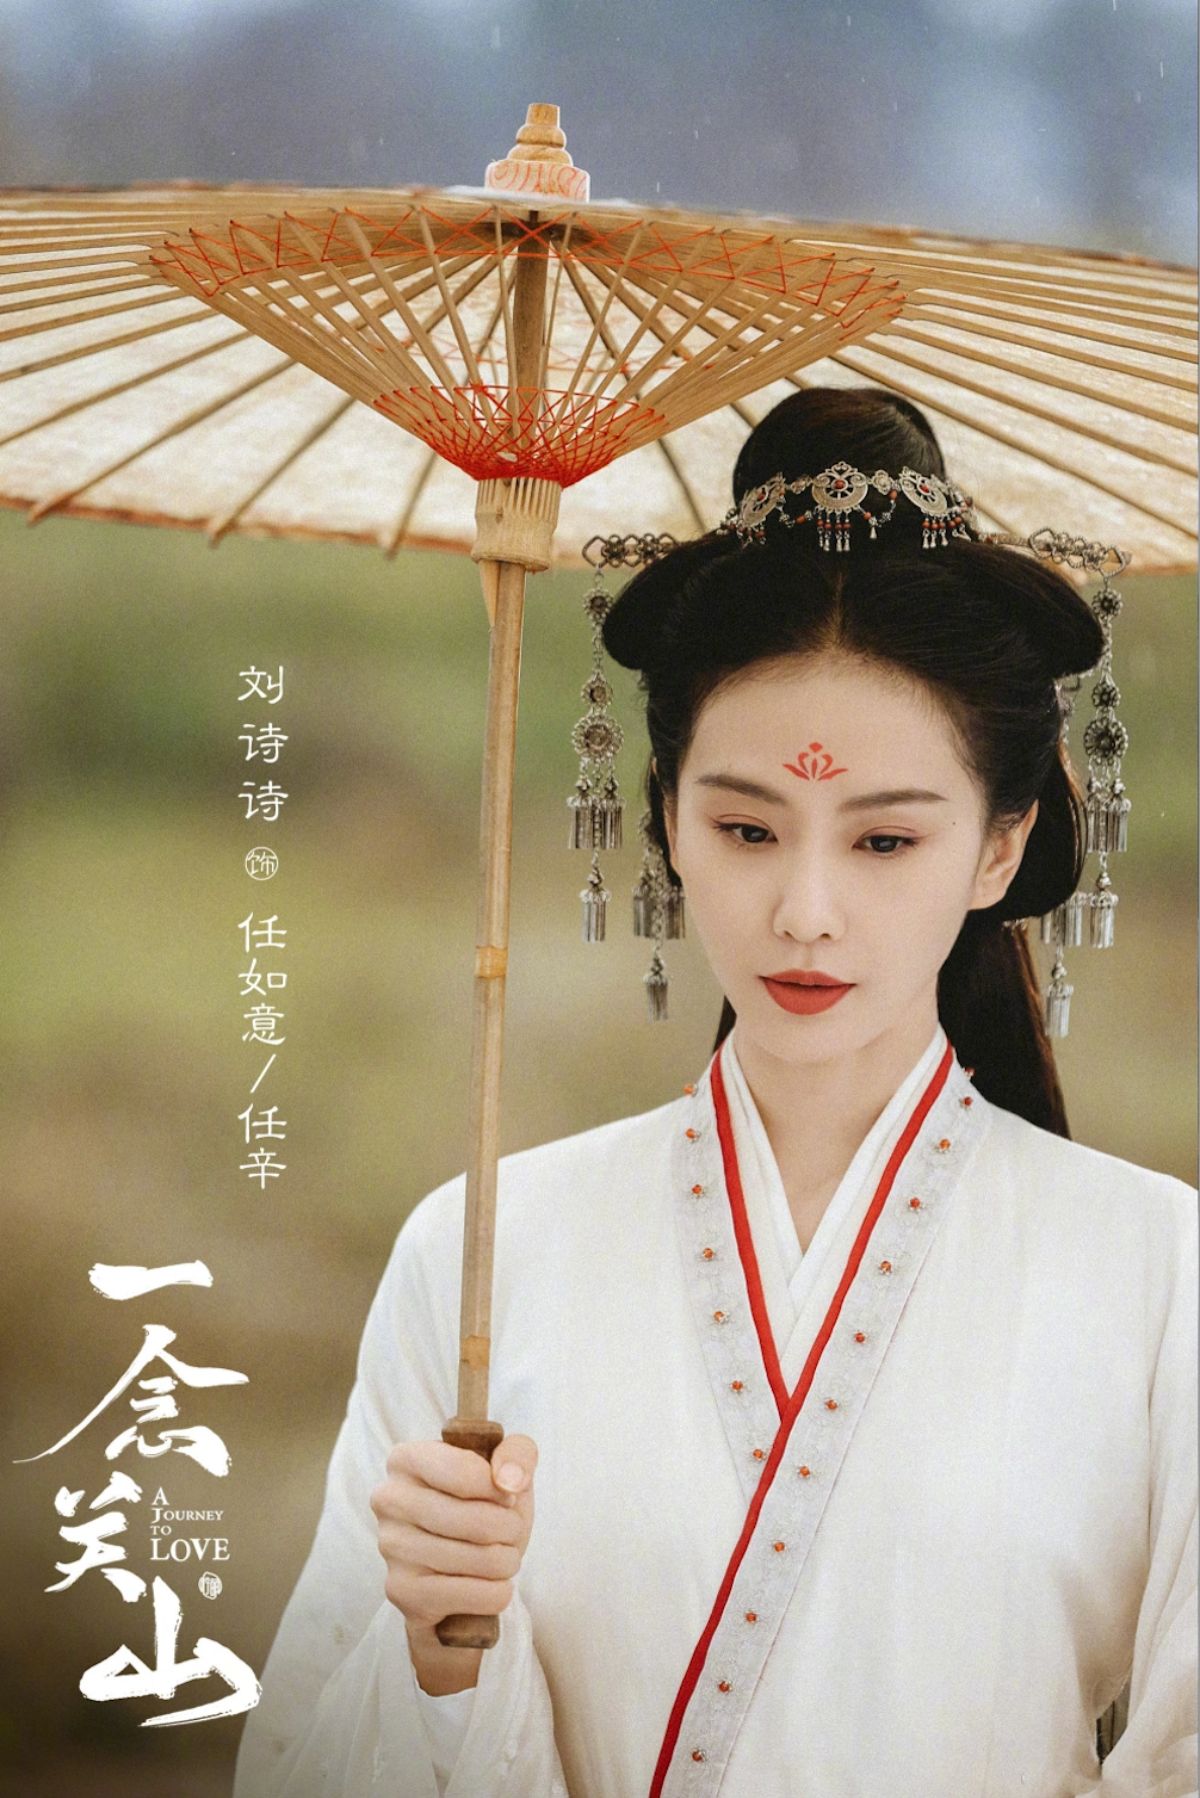 Trong phim, người đẹp liên tục được khen ngợi trẻ hơn tuổi, diễn xuất ăn ý với đàn em Lưu Vũ Ninh